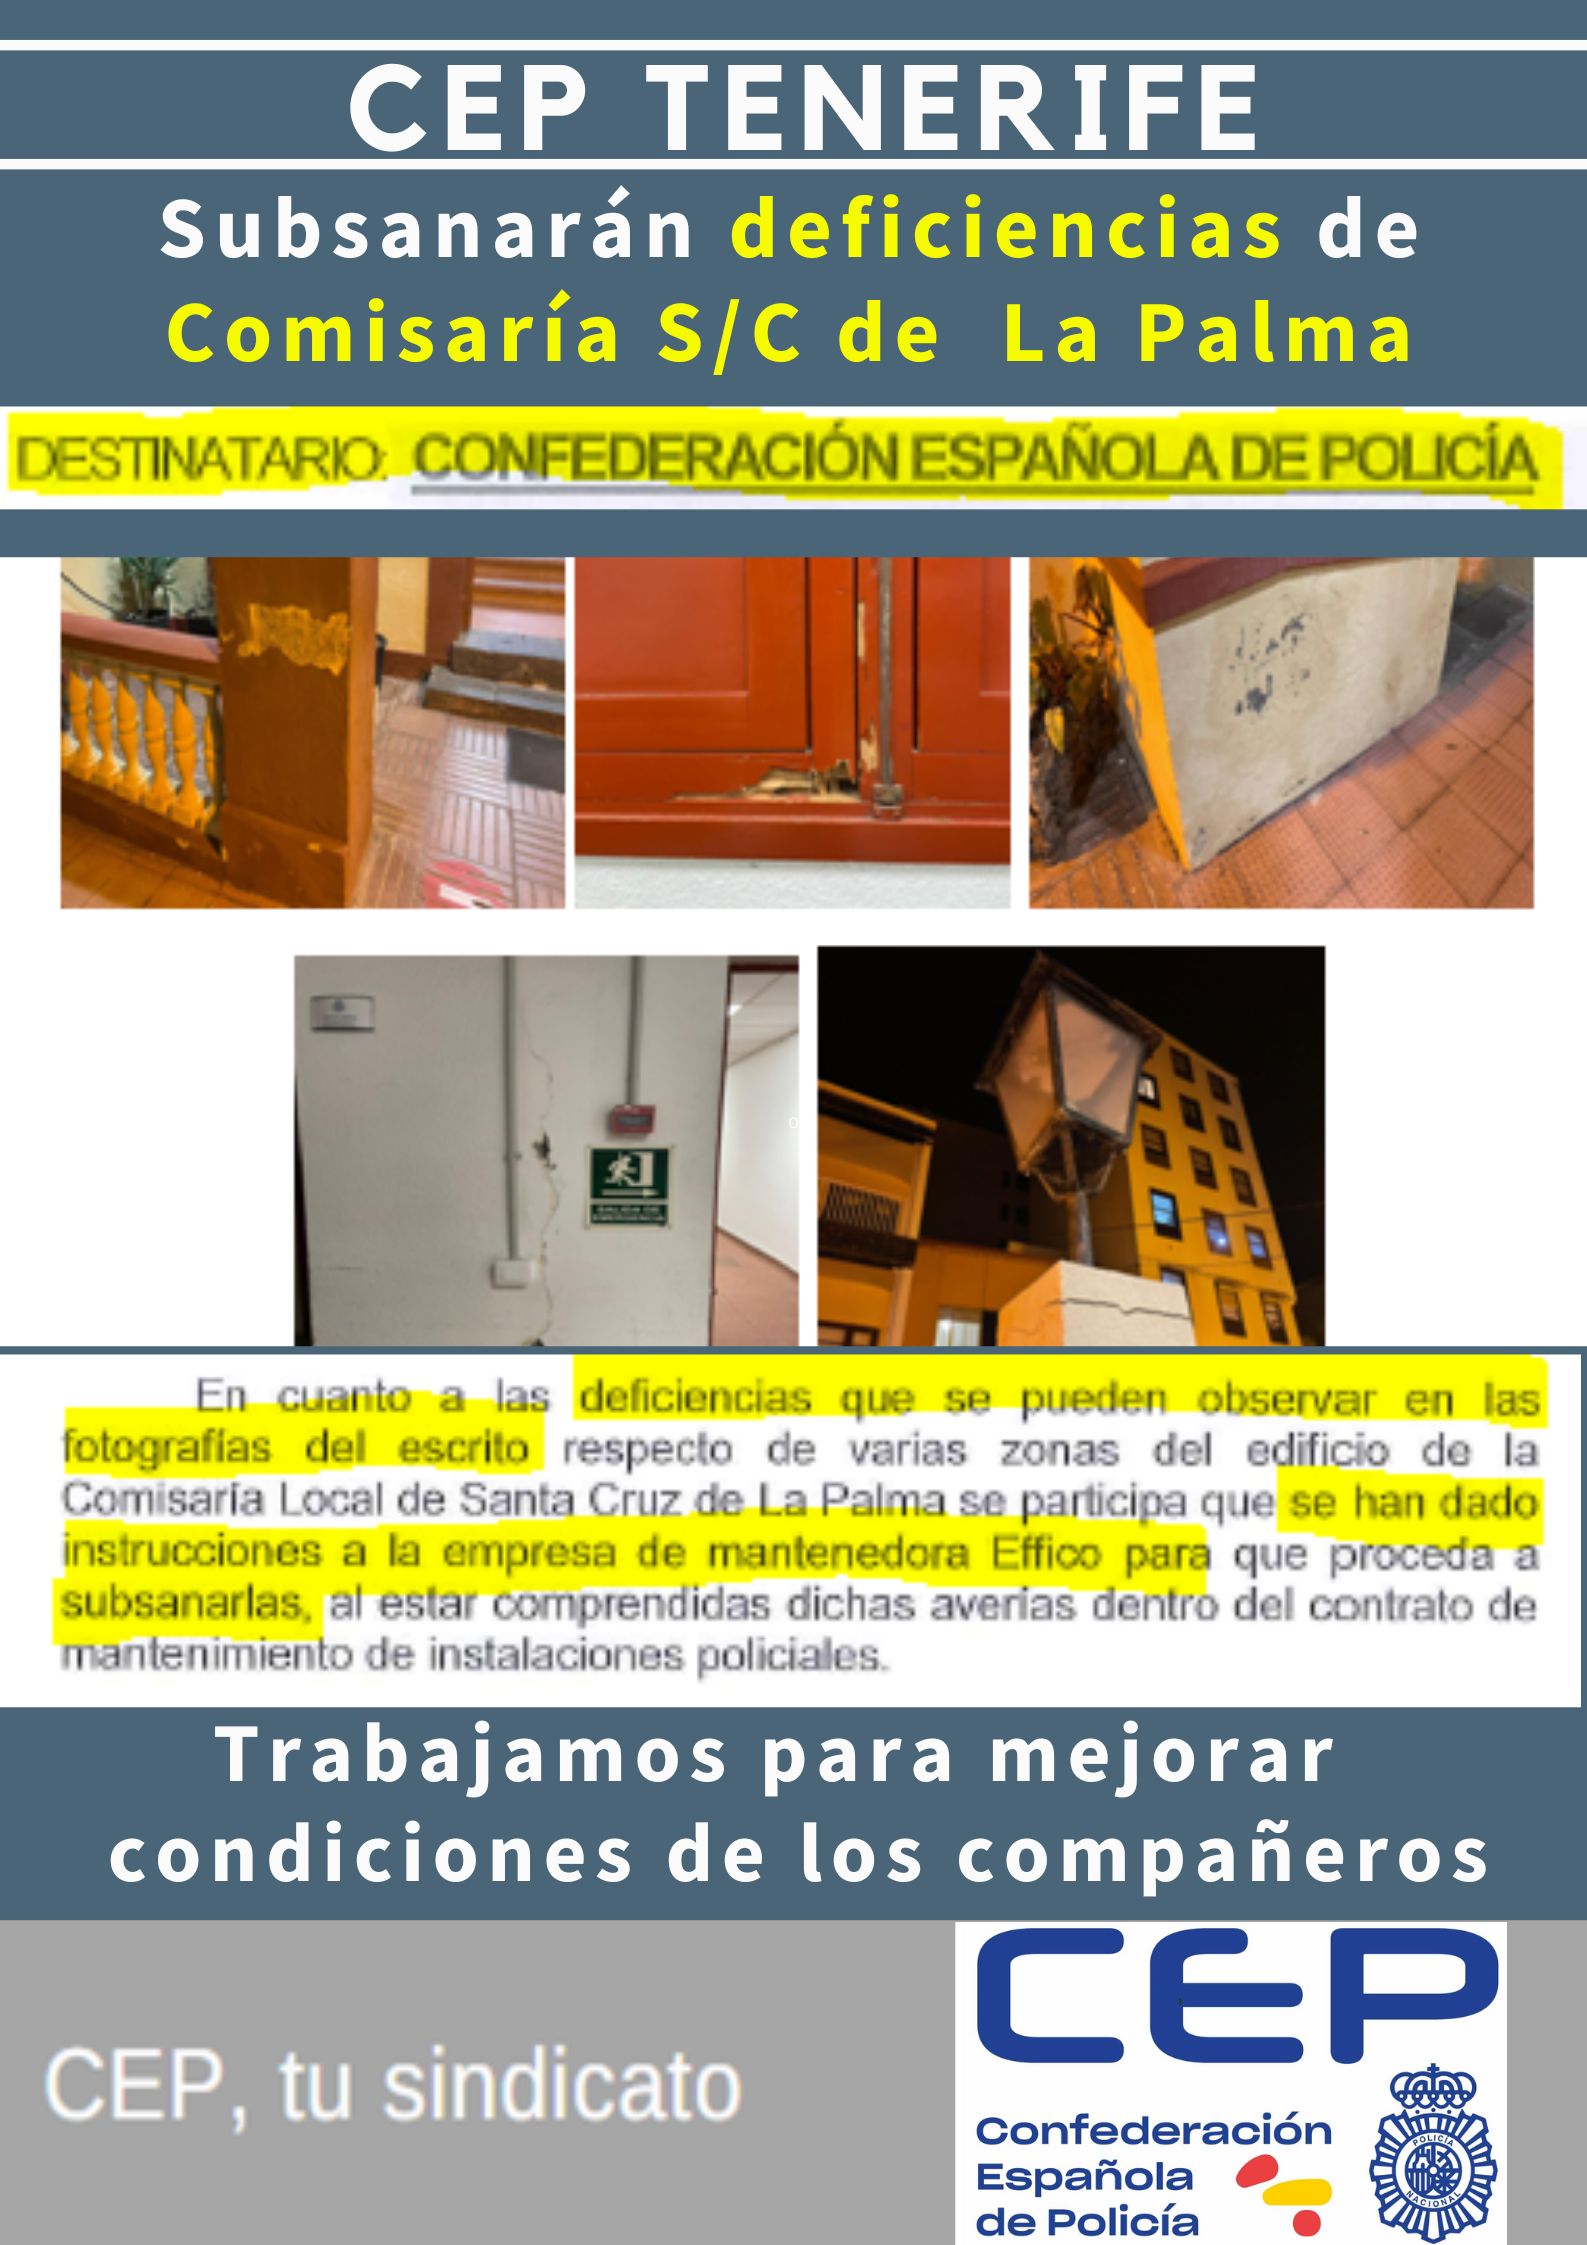 Subsanarán deficiencias dependencias Comisaría de La Palma